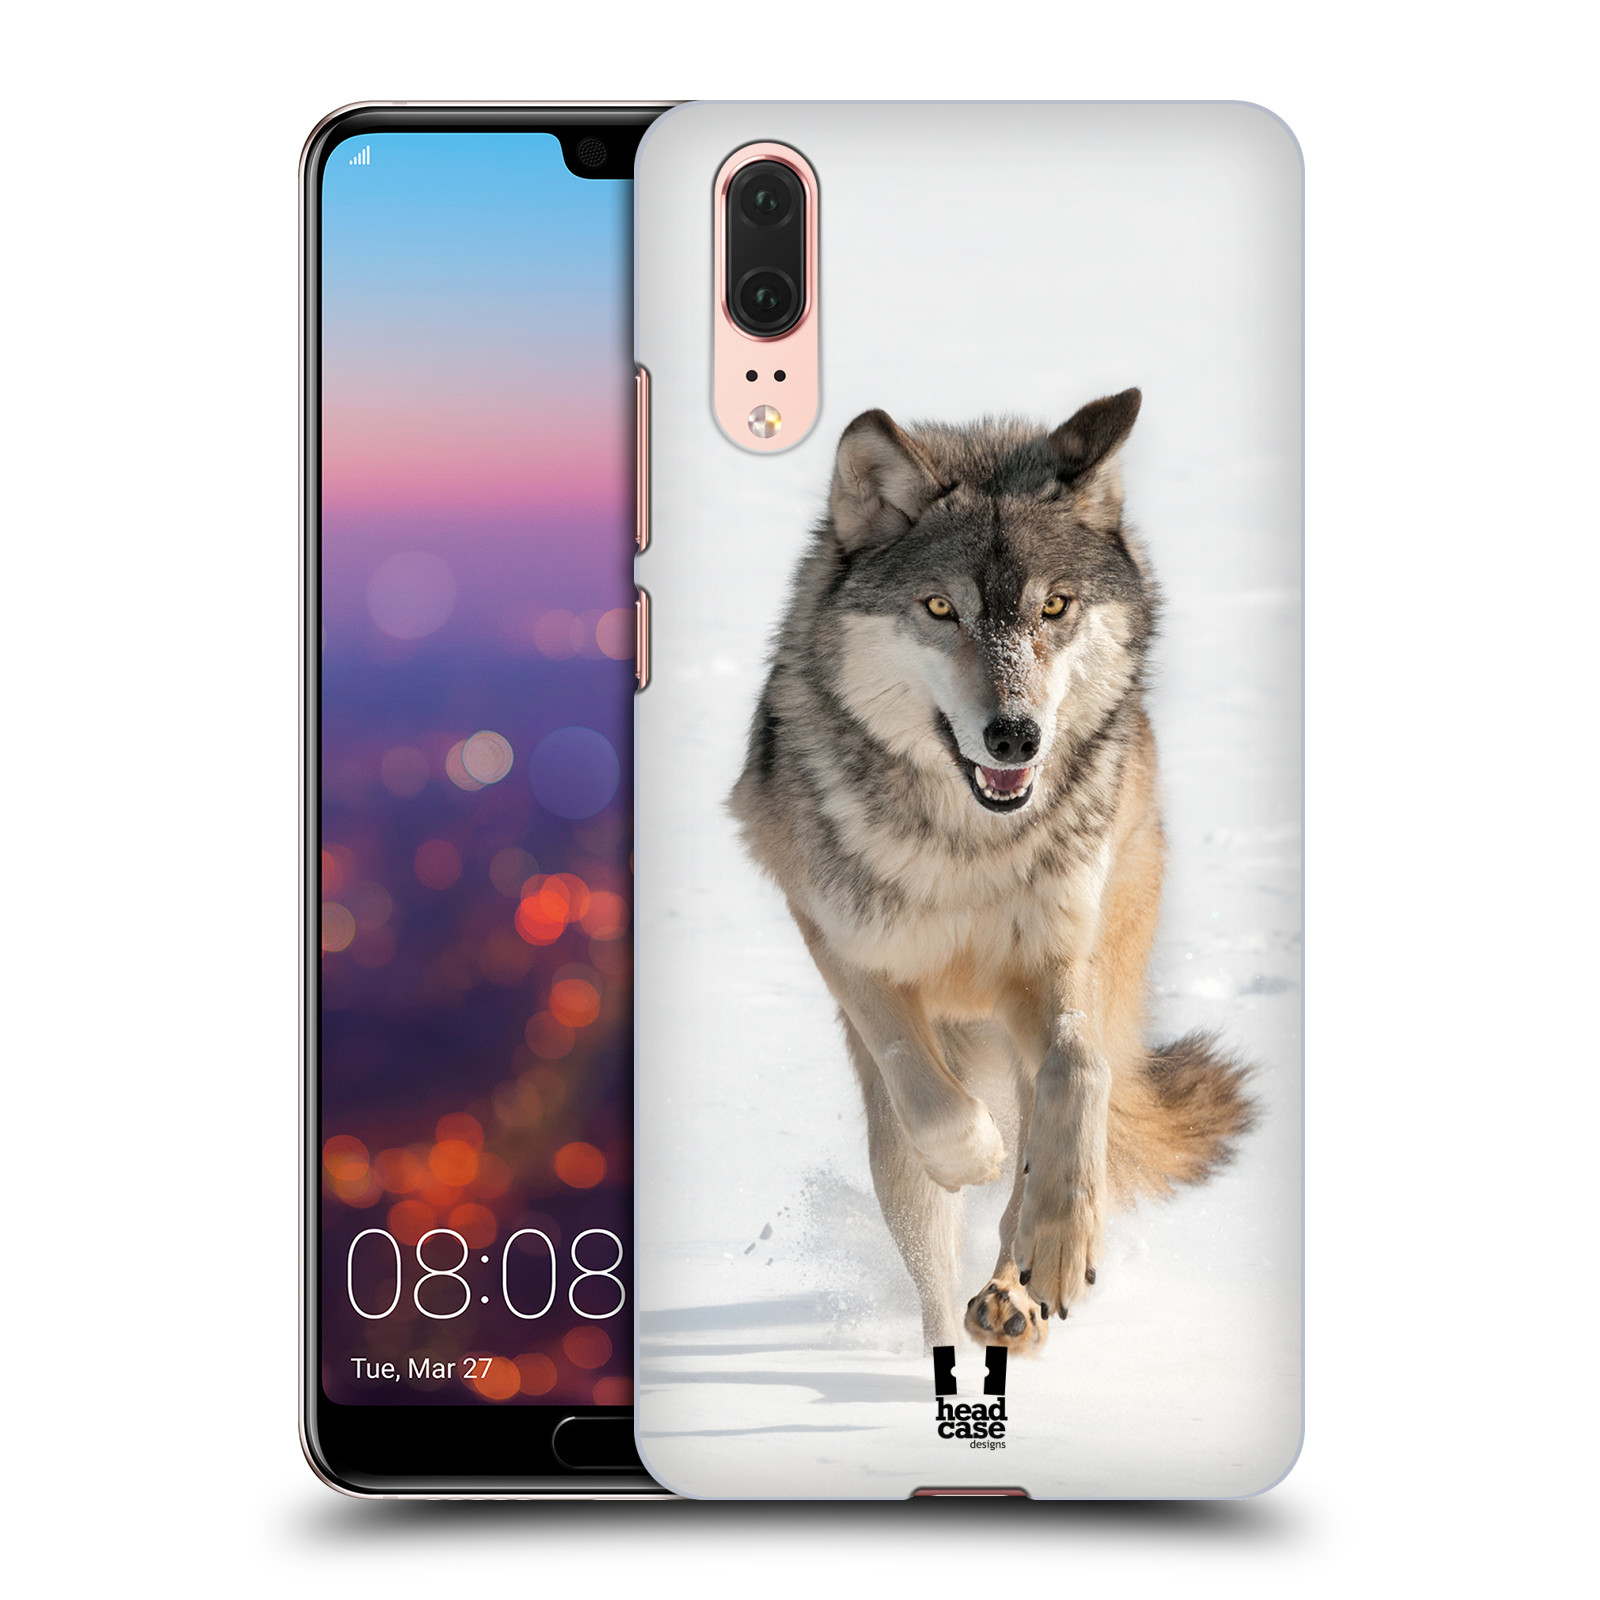 Zadní obal pro mobil Huawei P20 - HEAD CASE - Svět zvířat divoký vlk